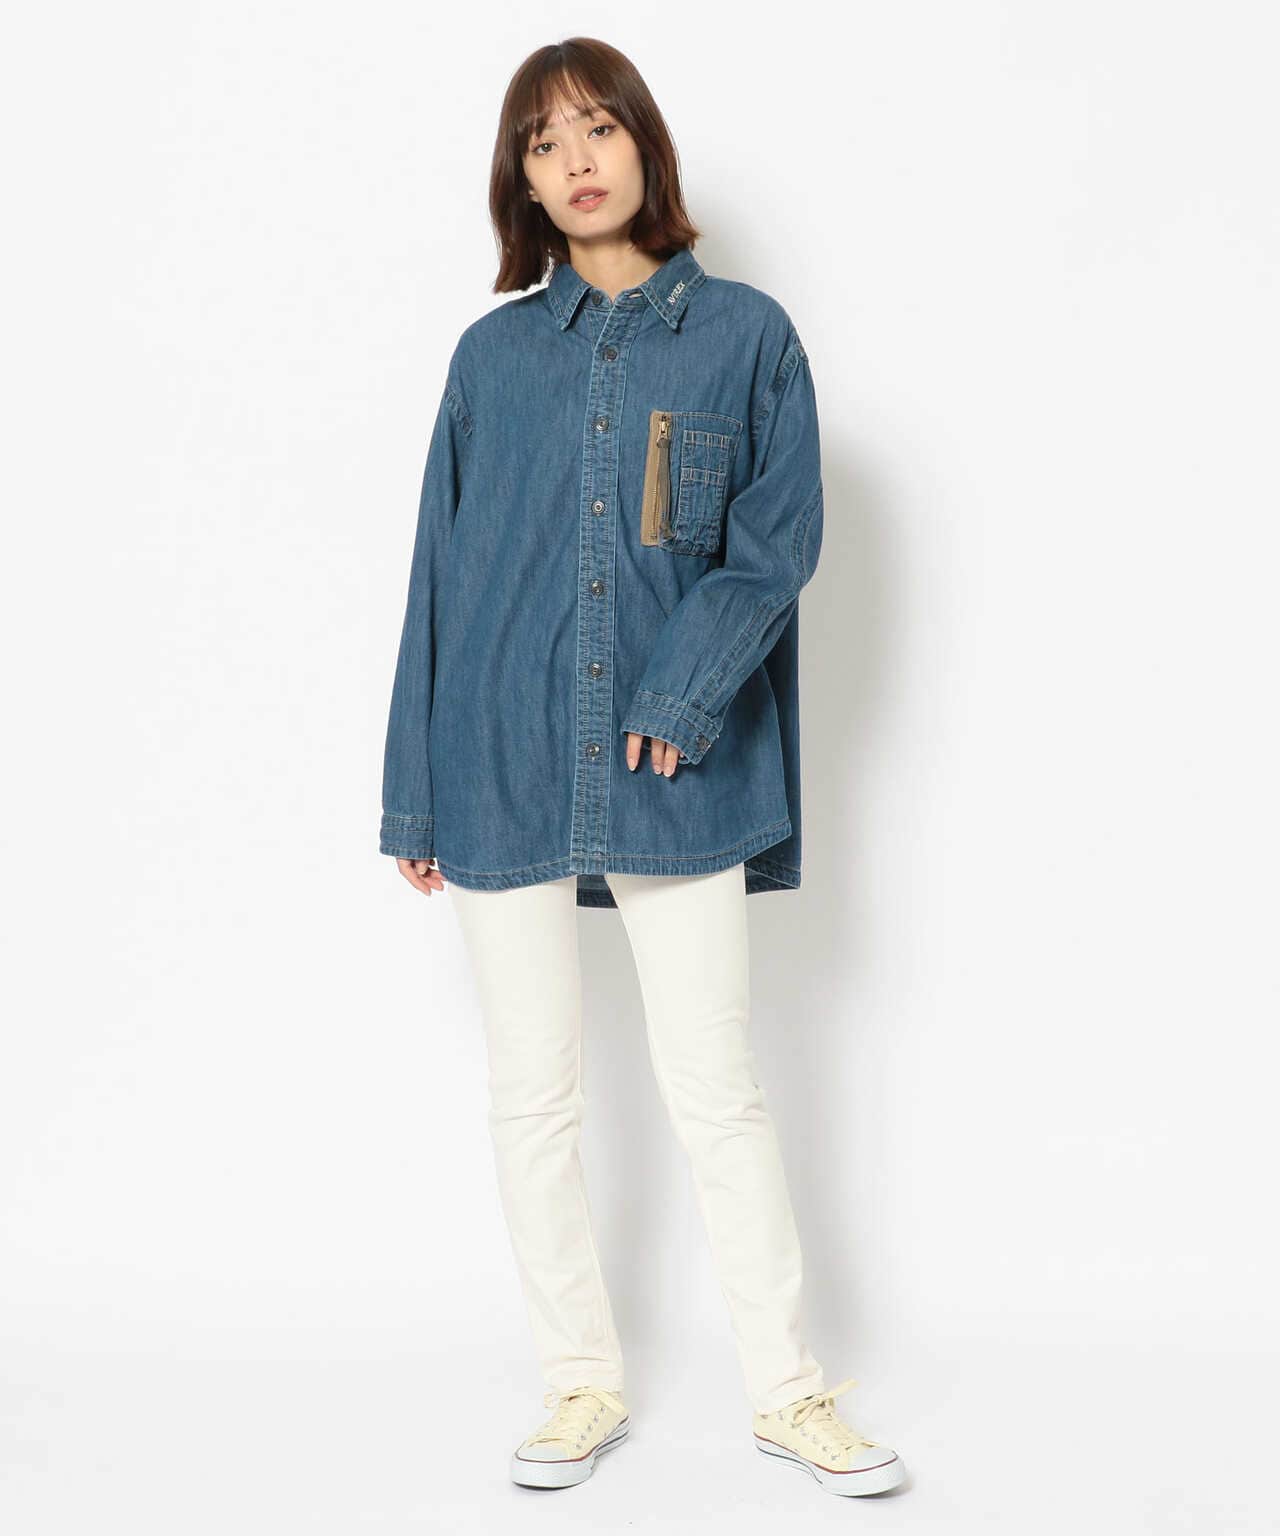 タイプブルー デニムMA-1シャツ/ L-TYPE BLUE L/S DENIM MA-1 SHIRT